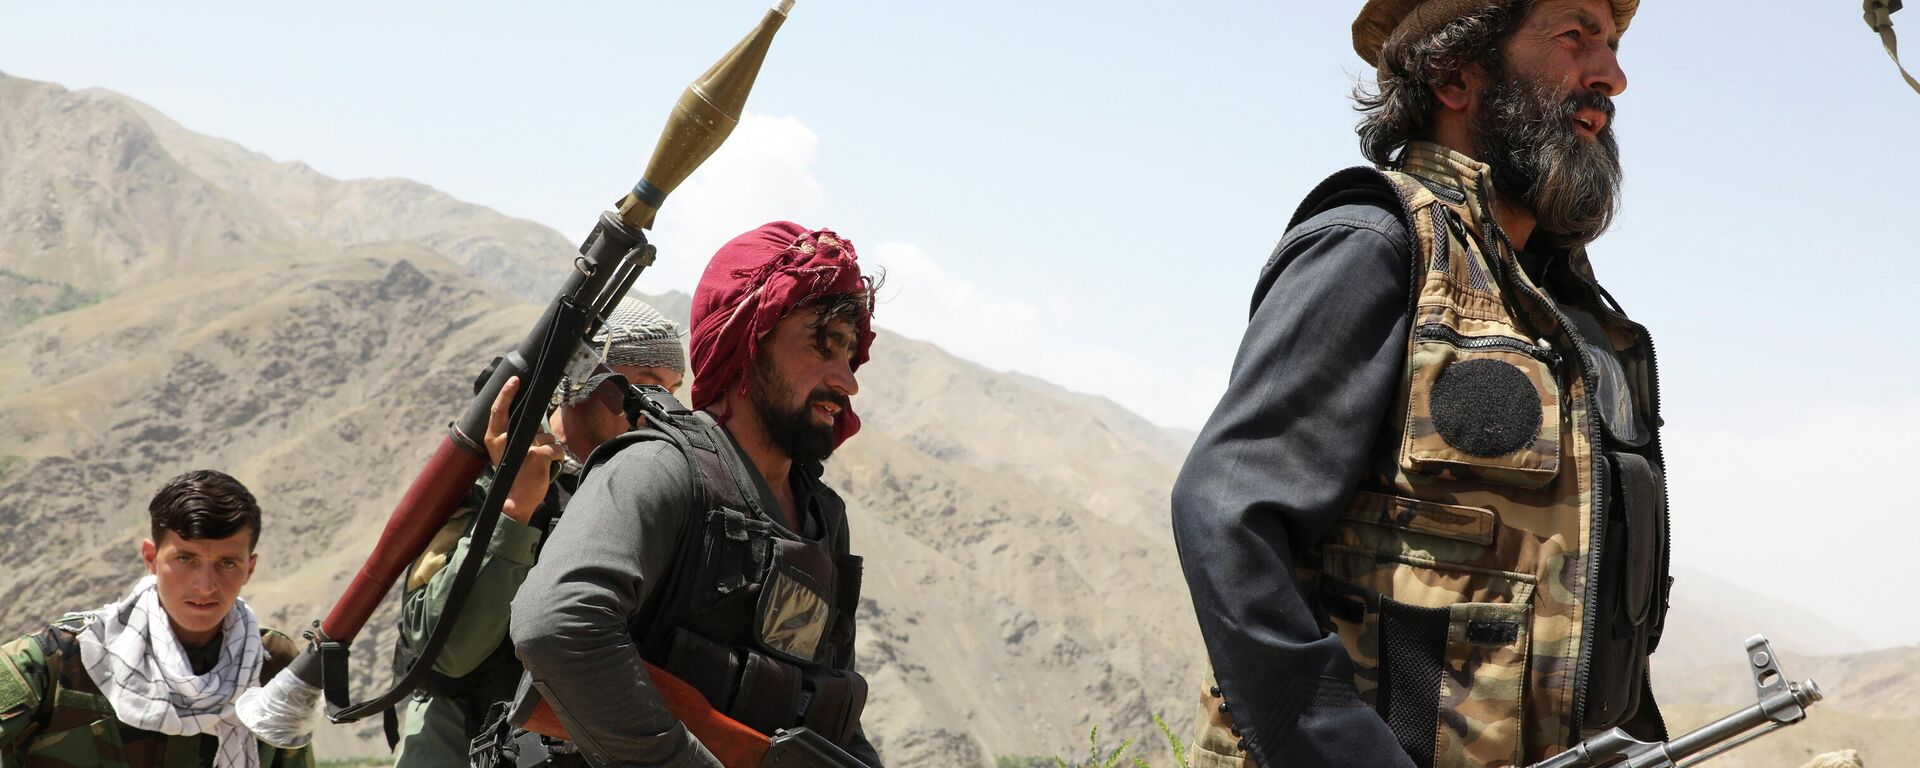 Hombres armados que están en contra de los talibanes caminan por el territorio de su puesto de control en el distrito de Ghorband, provincia de Parwan, Afganistán, el 29 de junio de 2021.  - Sputnik Mundo, 1920, 10.07.2021